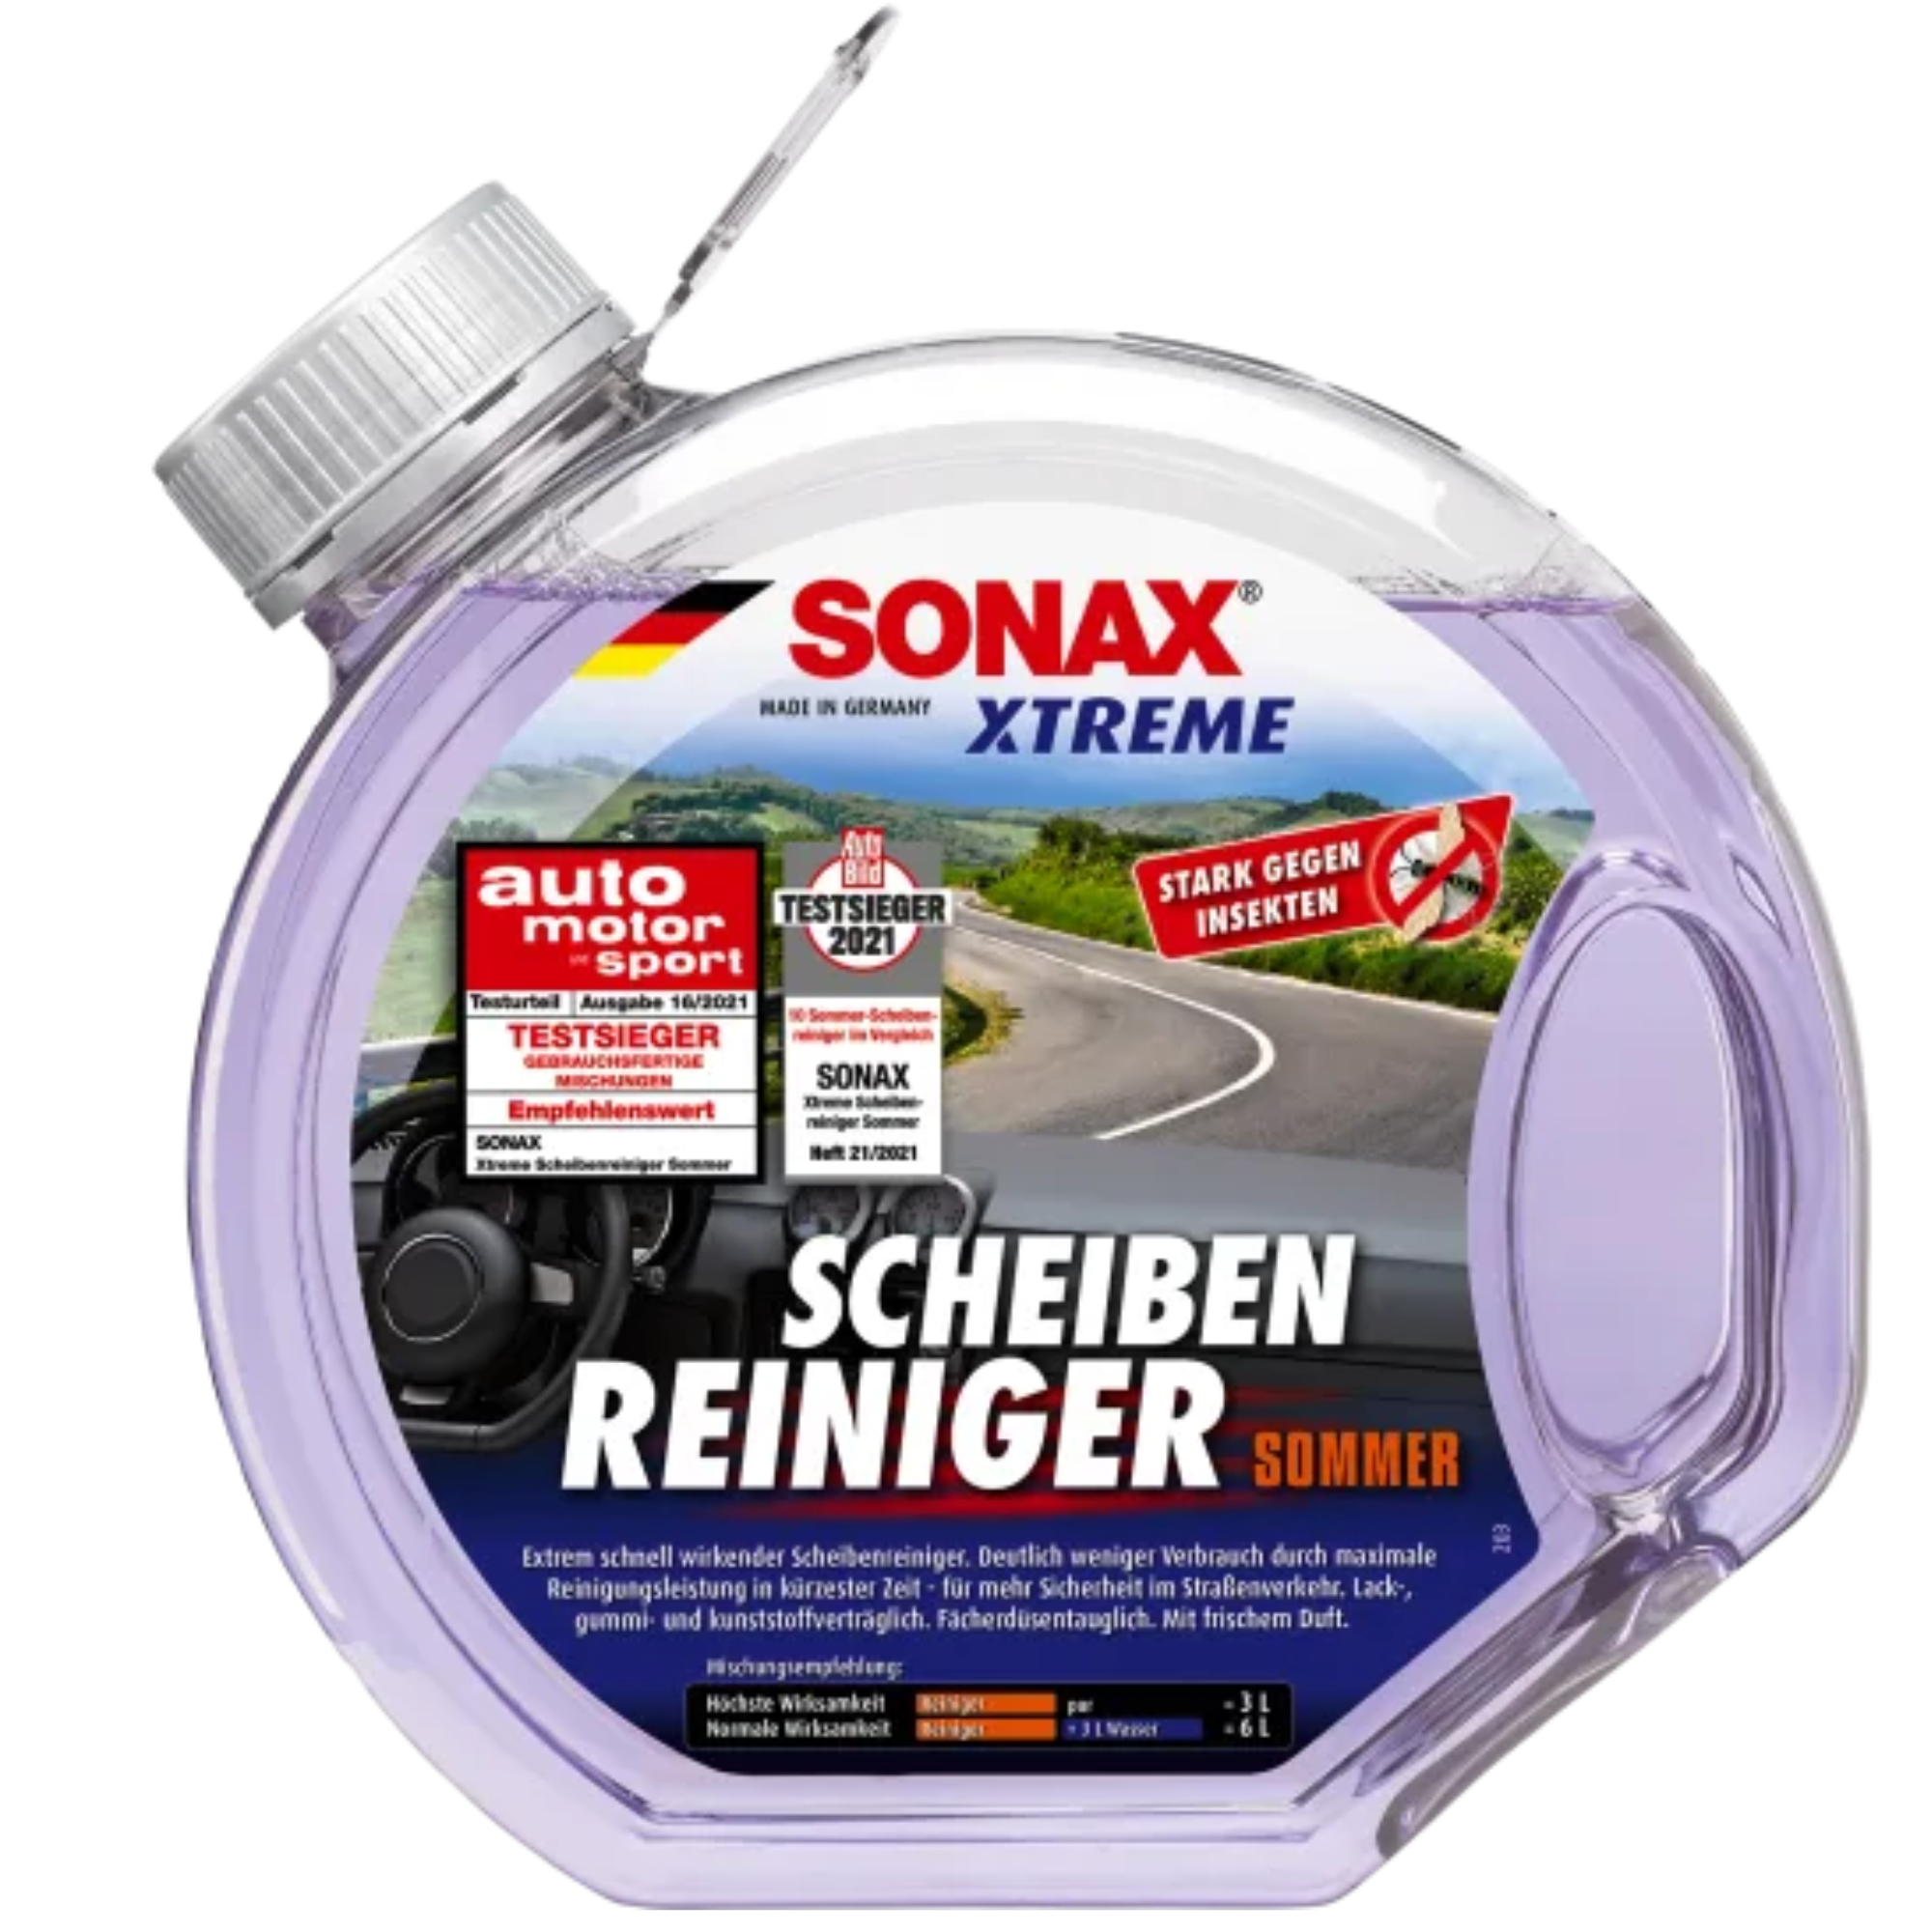 SONAX XTREME Scheibenreiniger Sommer gebrauchsfertig - 3l – KFZ